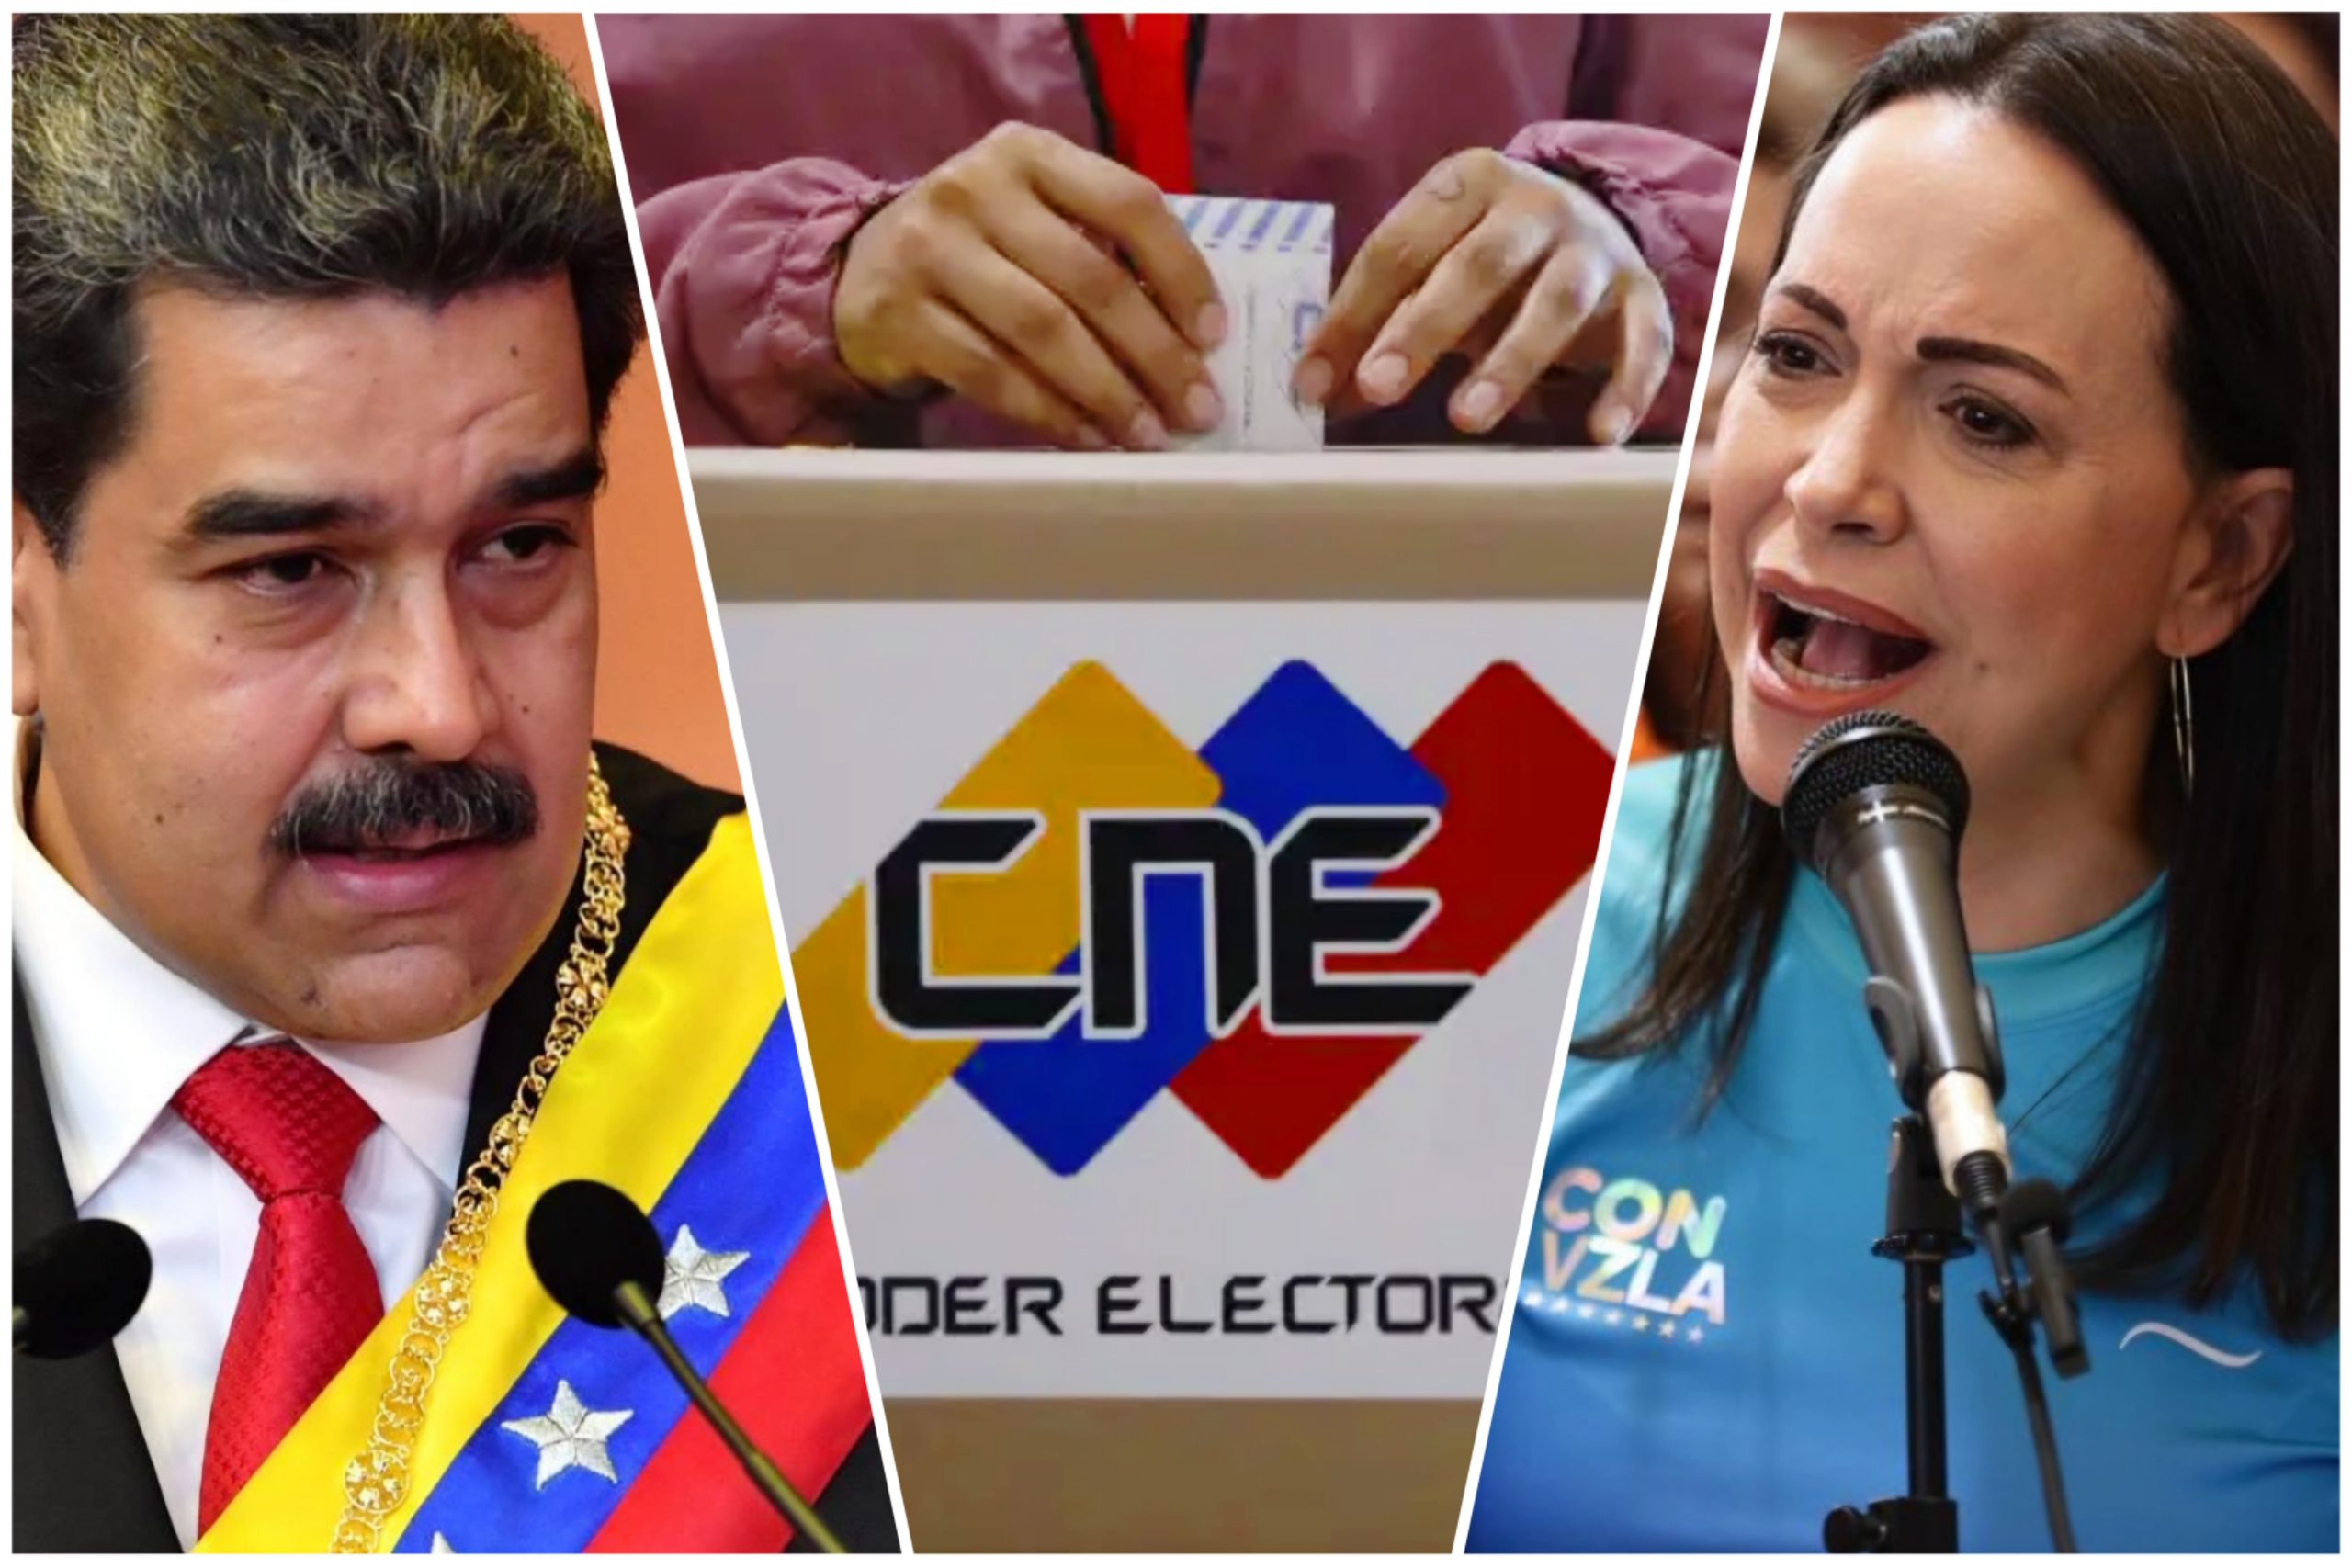 Venezuela tendrá elecciones presidenciales el próximo 28 de julio. Maduro vs Machado ¿Y la inhabilidad?